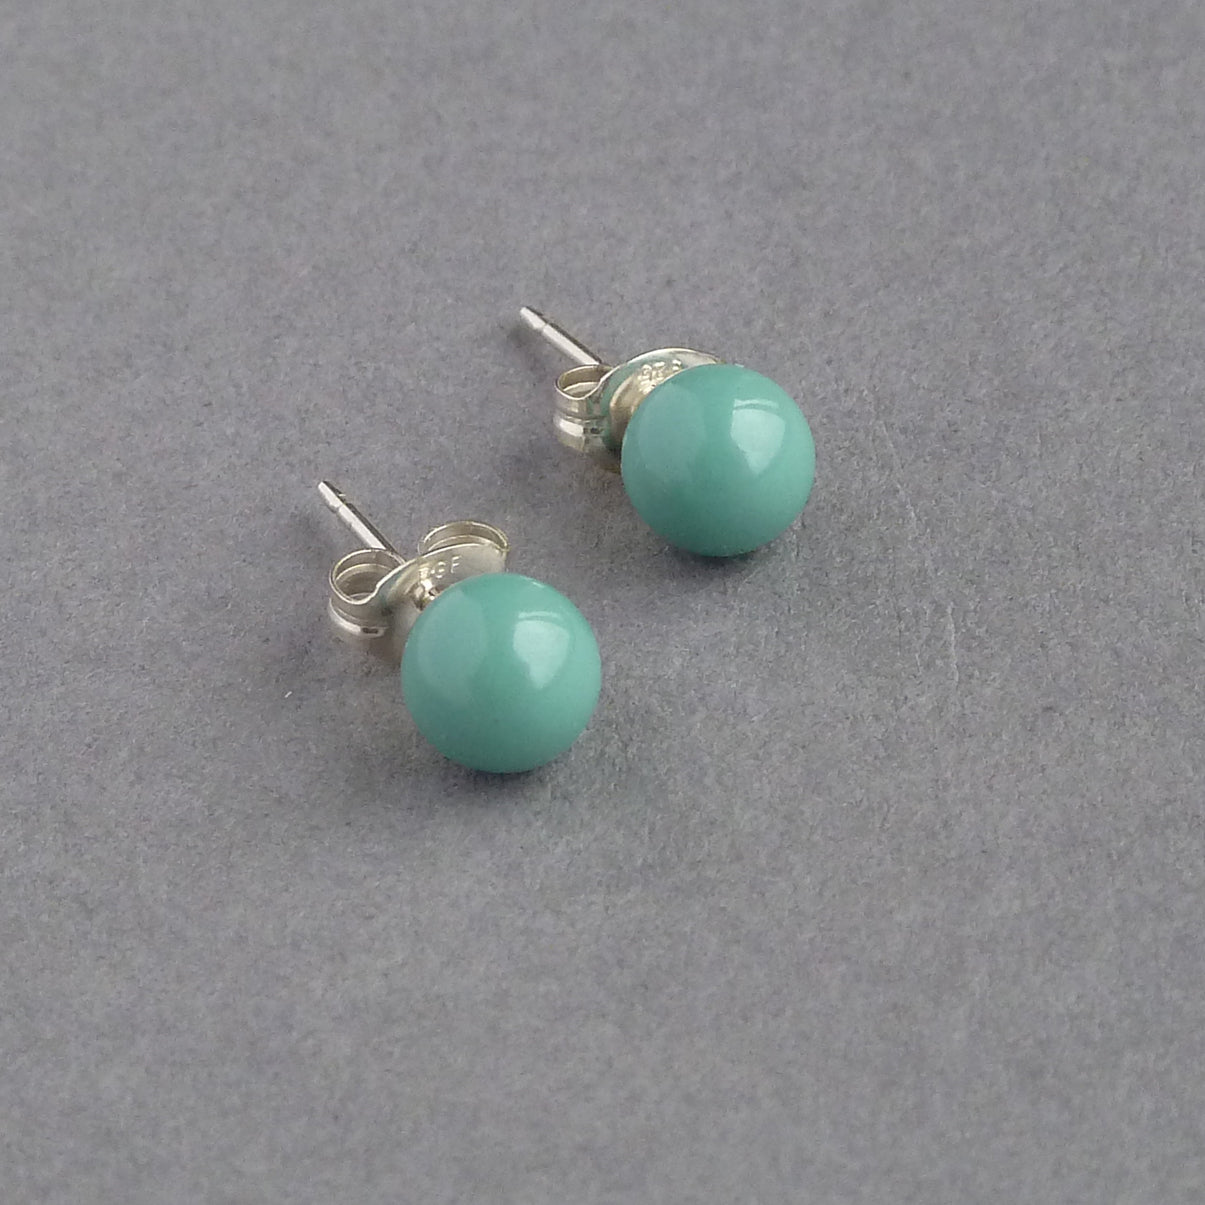 Small aqua stud earrings